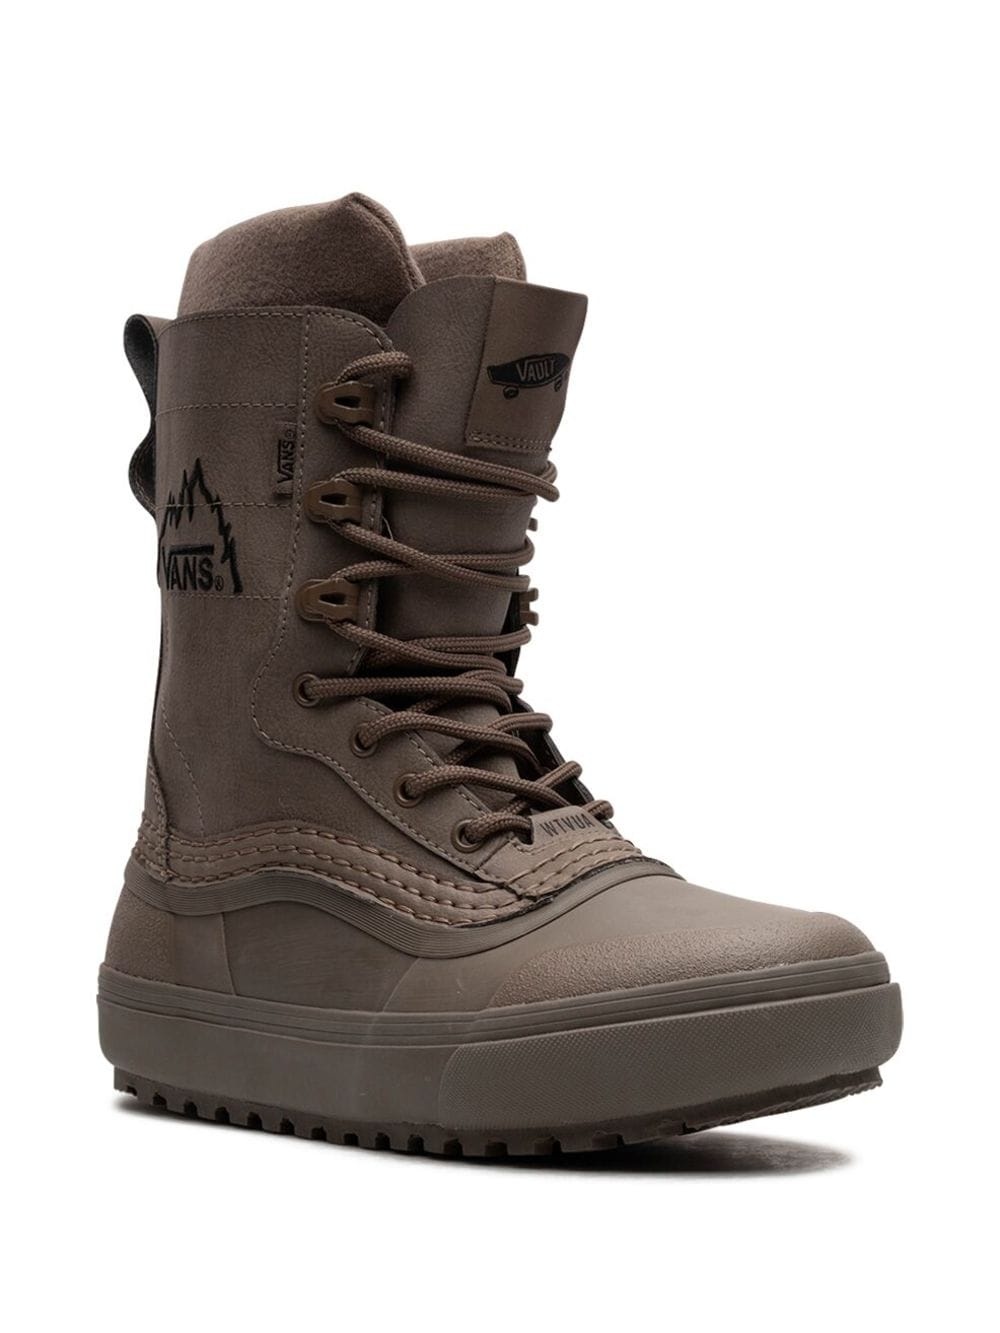 x WTAPS Standard Snow MTE boots - 2